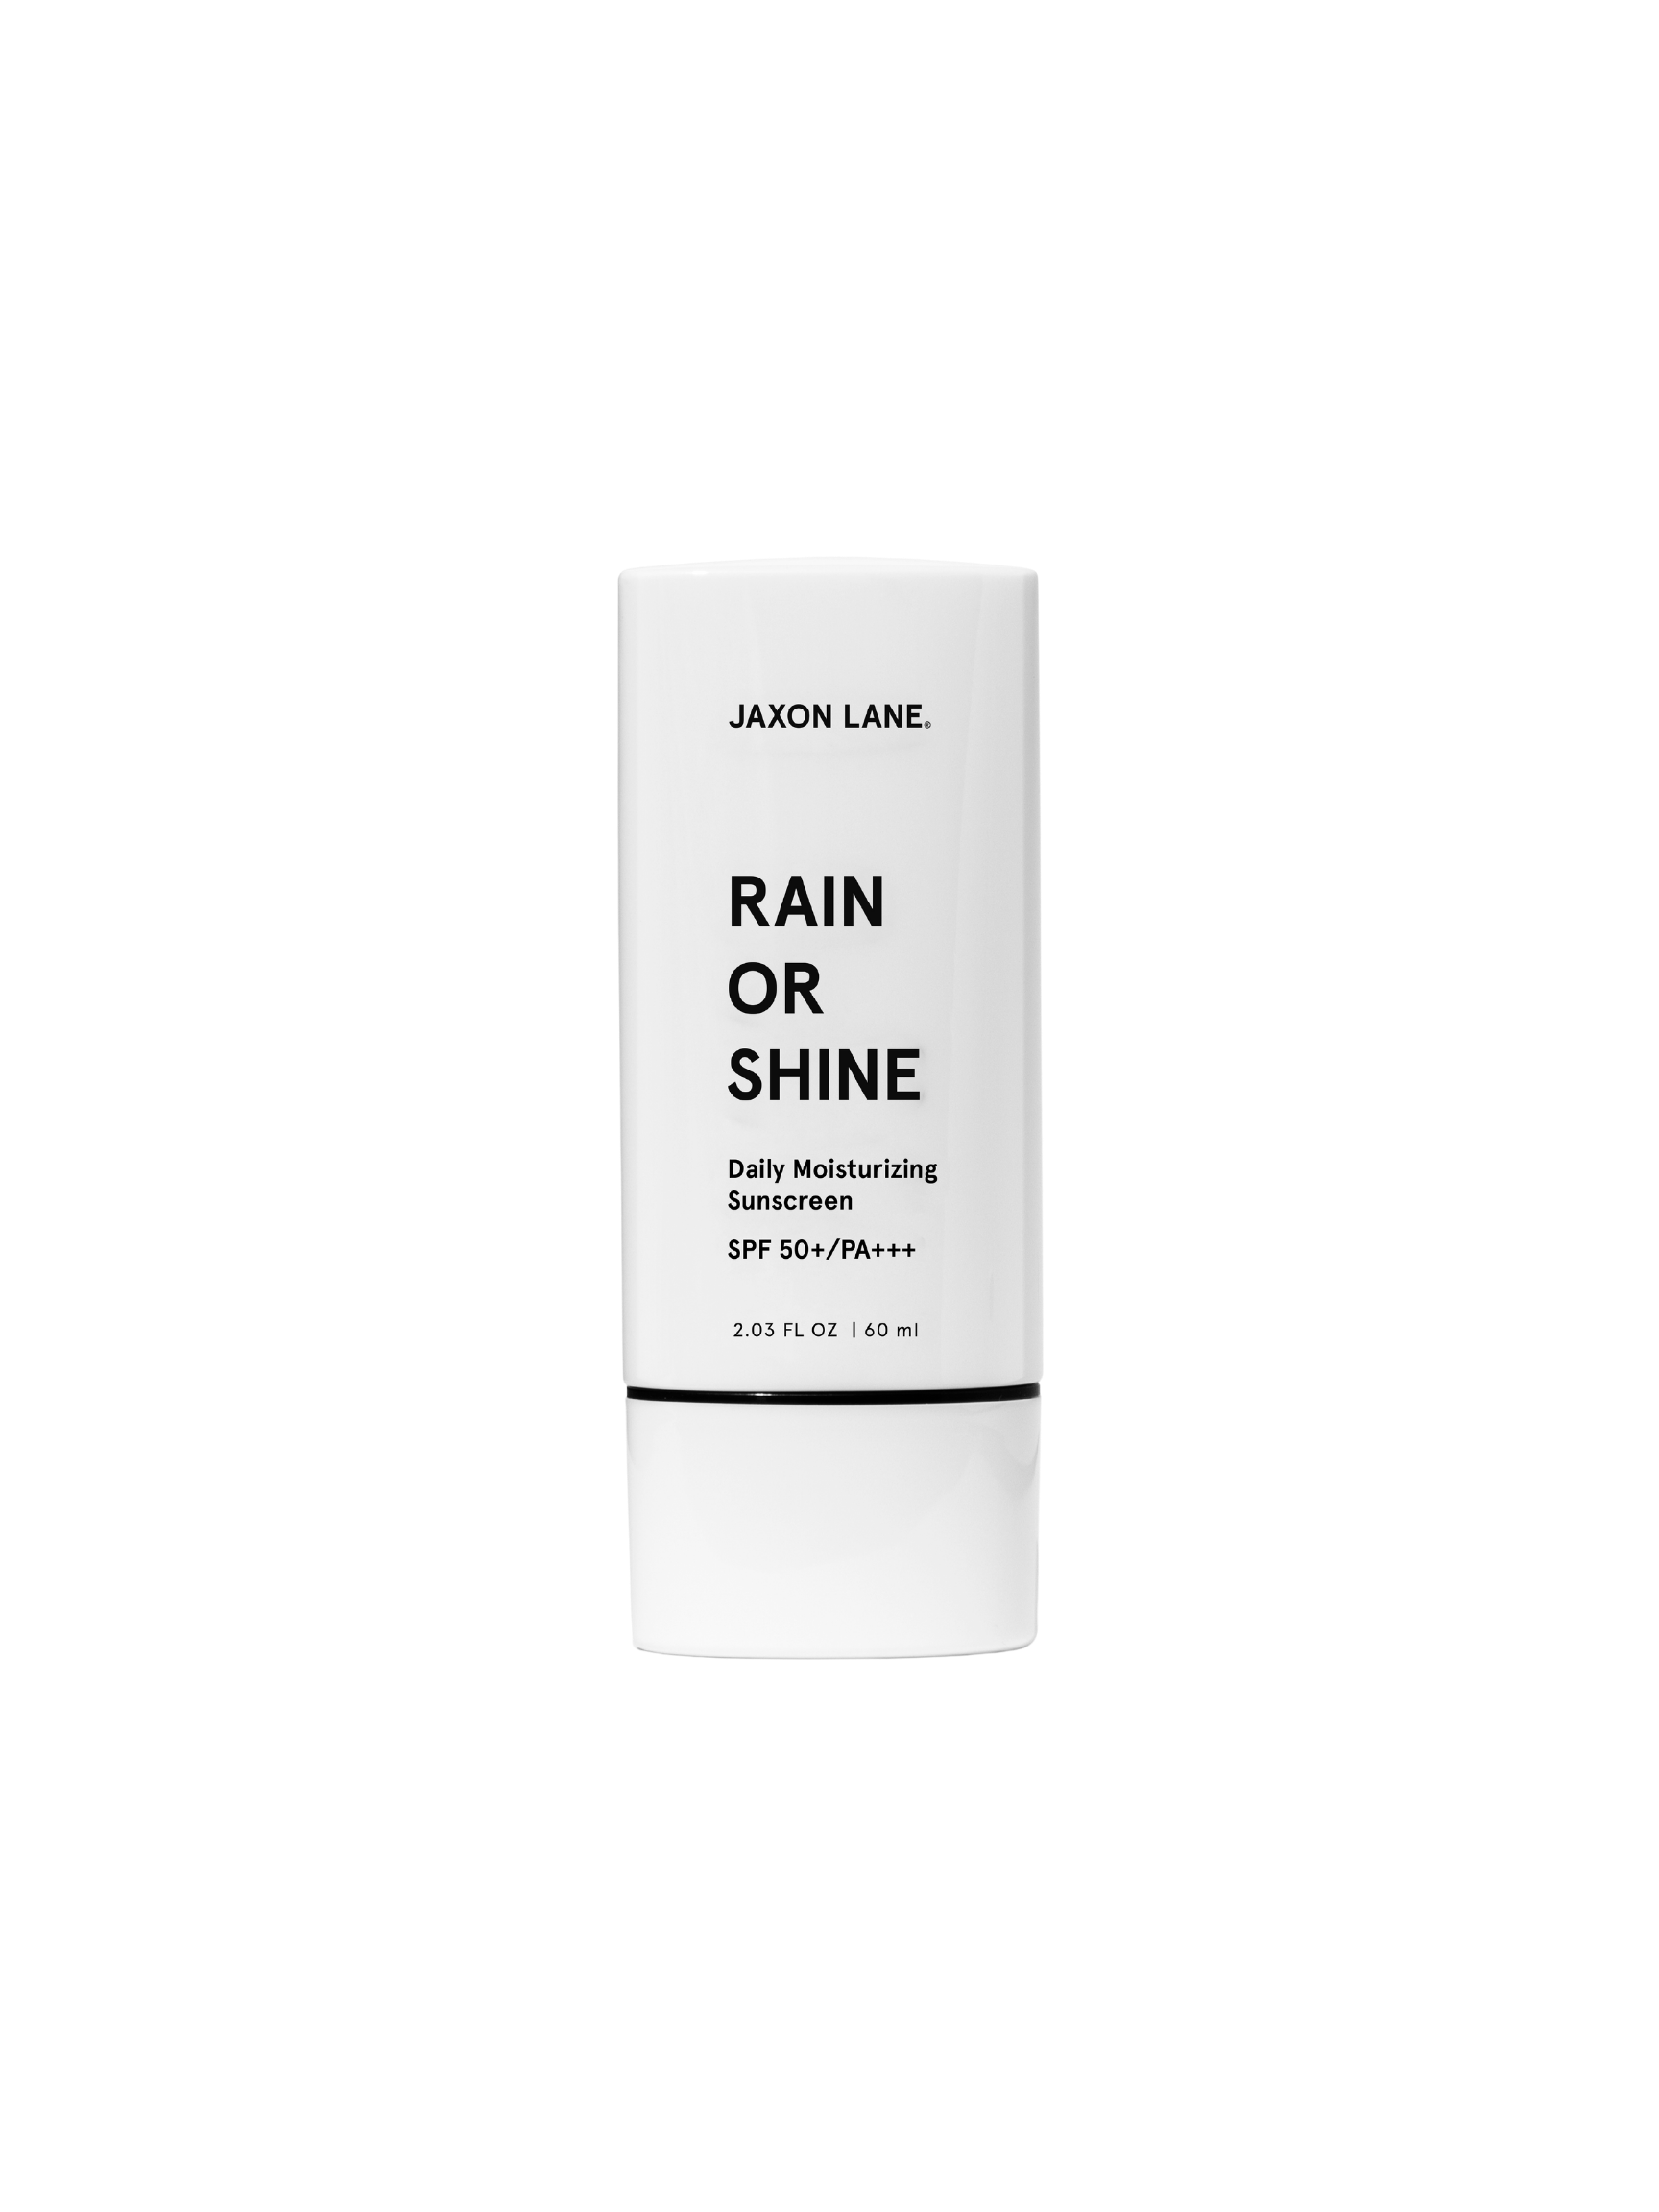 Jaxon Lane Rain or Shine Sunscreen 60mL, Rain or Shine Daily Moisturizing Sunscreen, Jaxon Lane, PourHommies